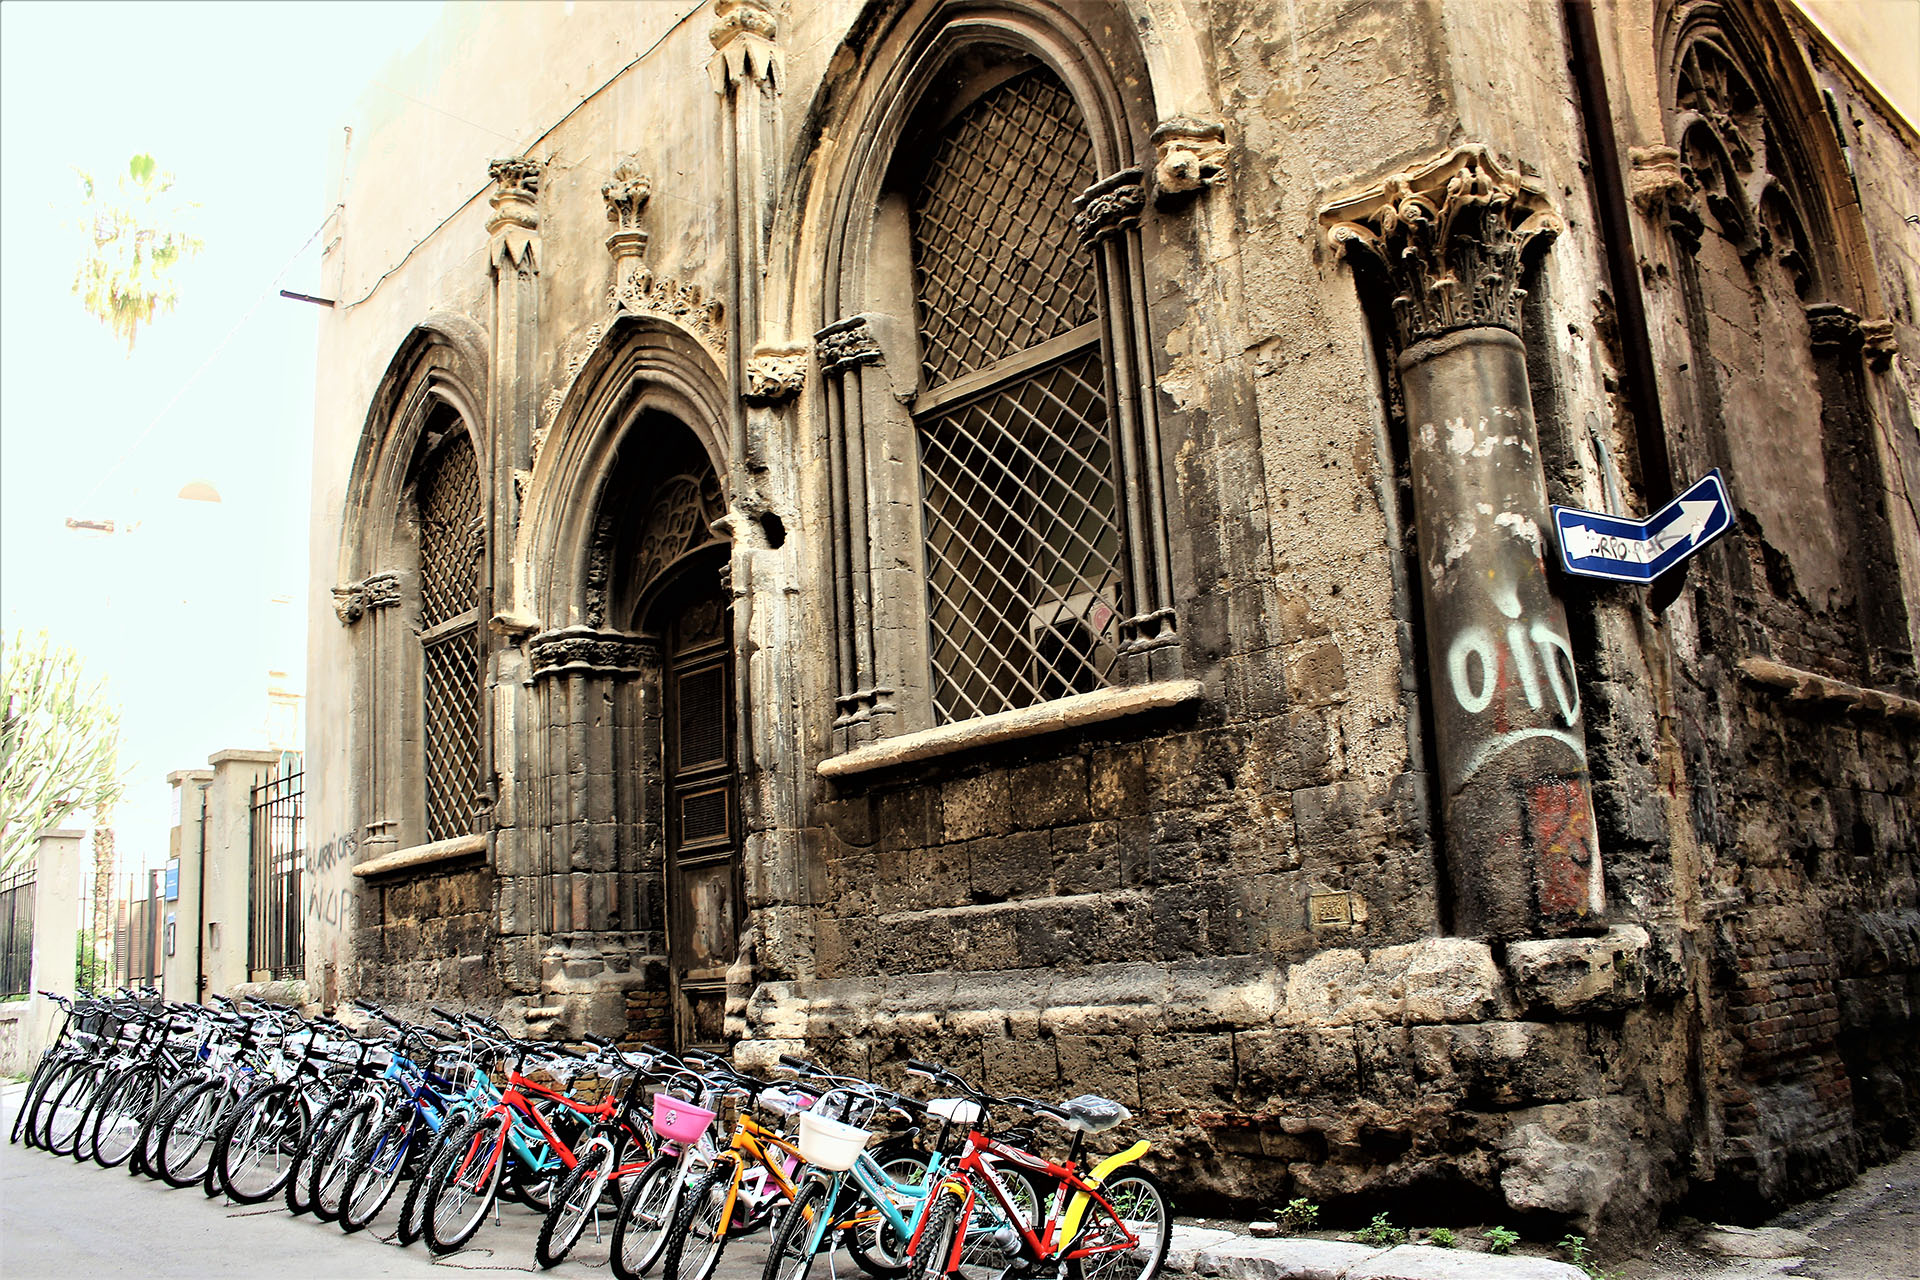 via Divisi, Palermo, Italy - La via delle Biciclette